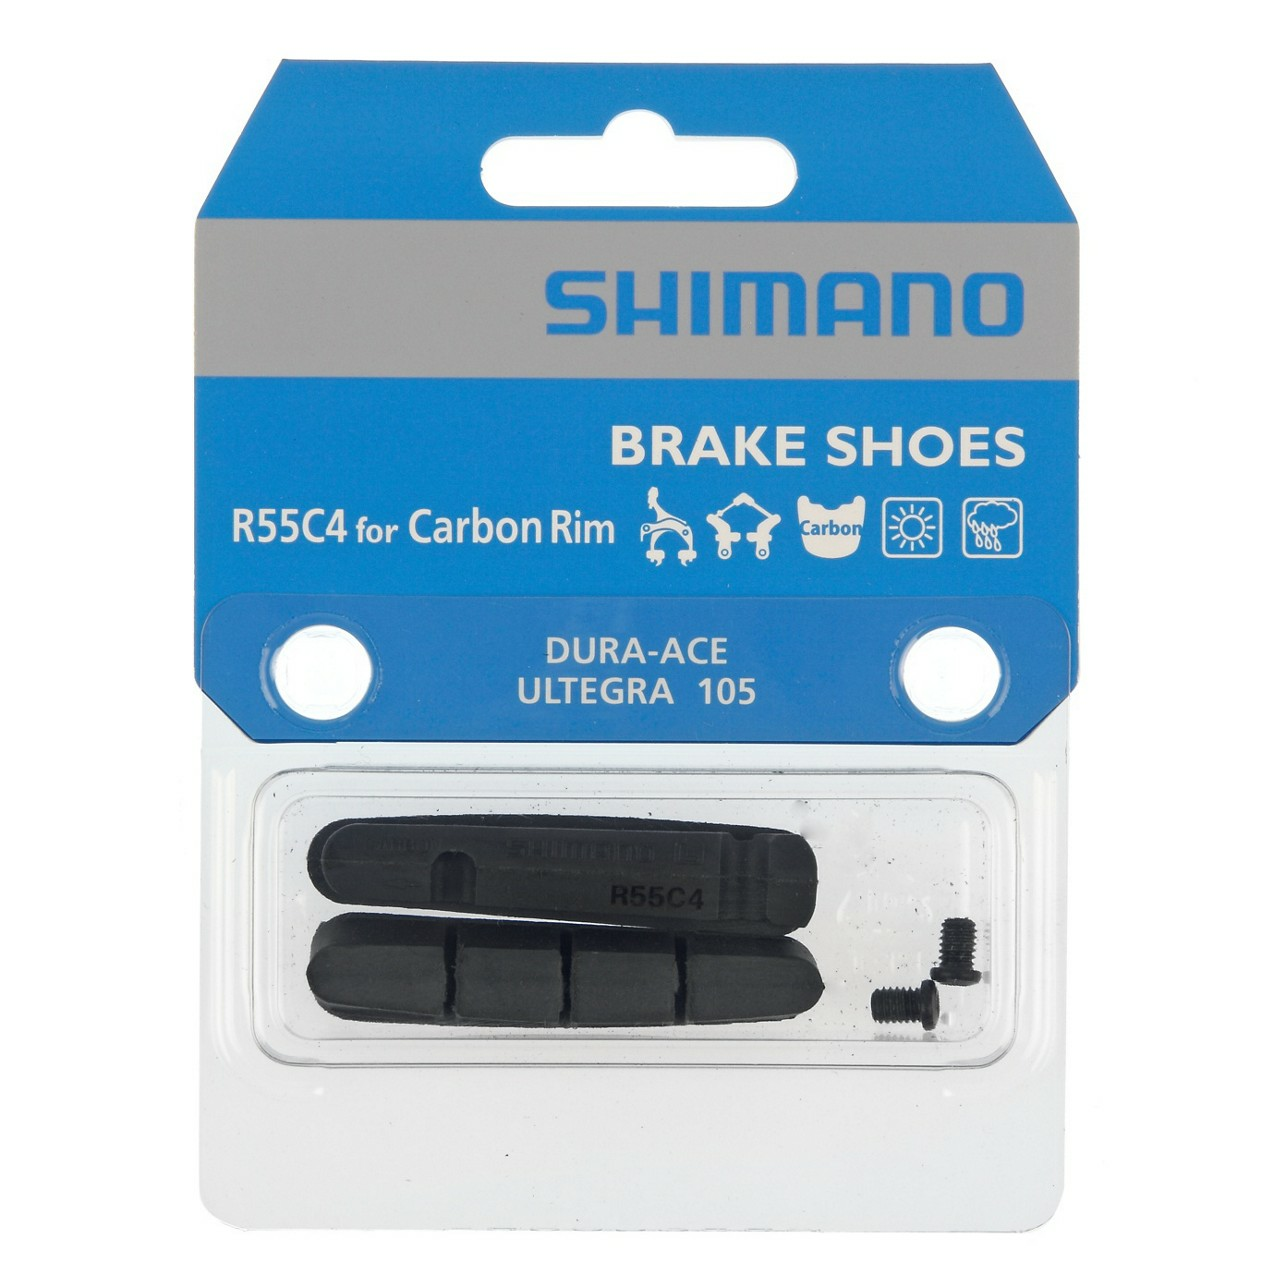 Shimano R55C4 Karbon jant için kartuş tipi fren pabuçları ve tespit civataları (çift)